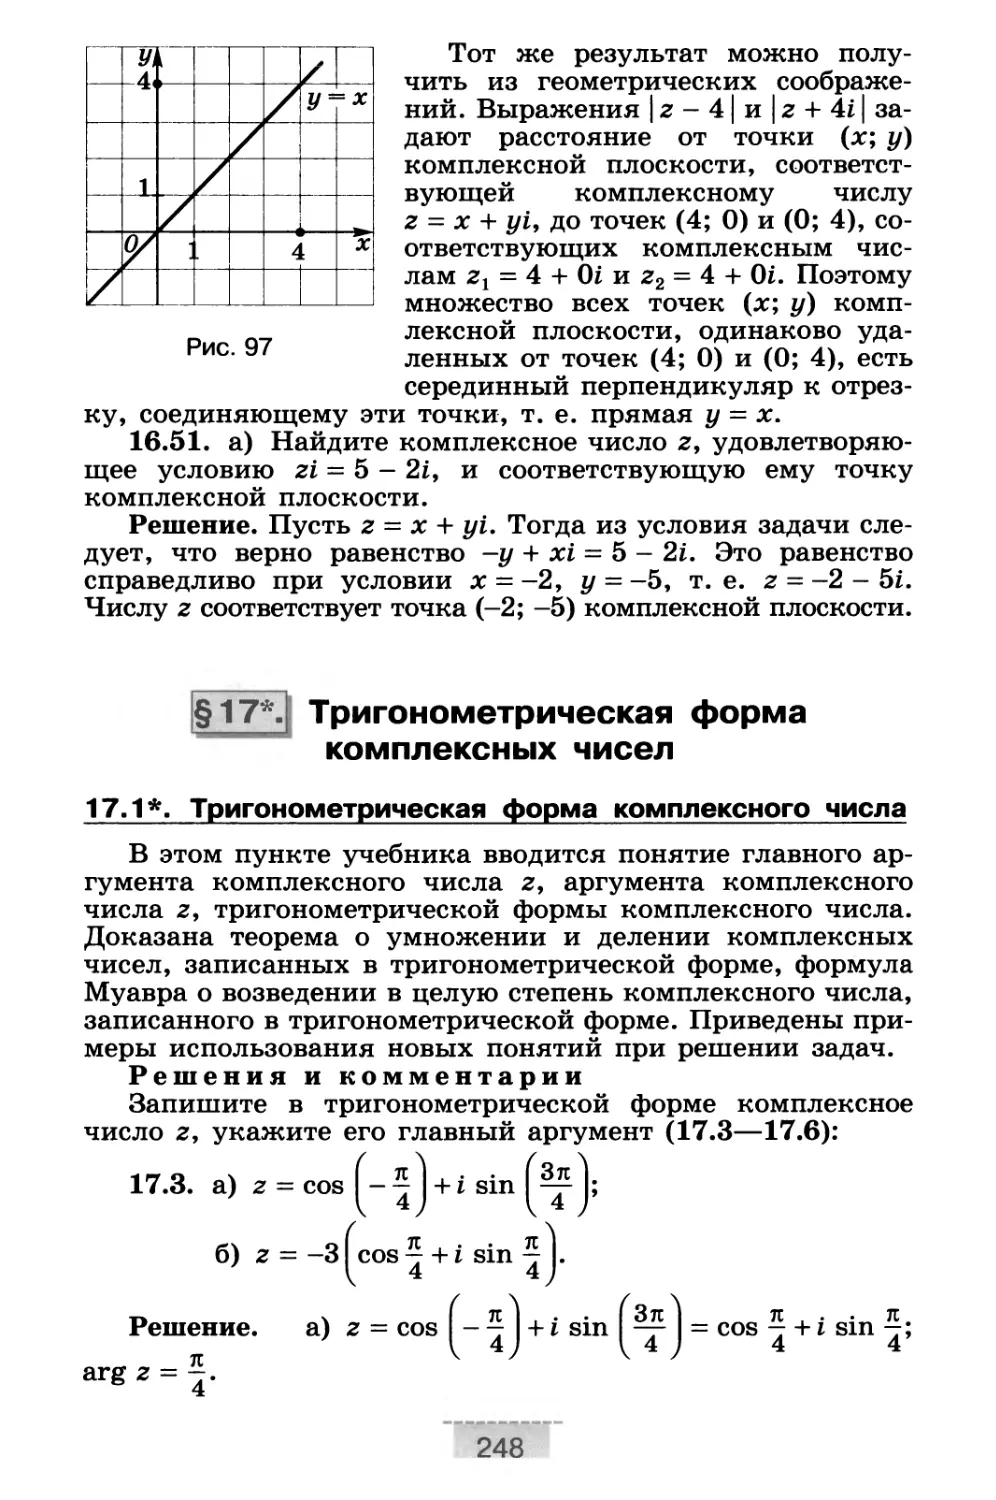 § 17*. Тригонометрическая форма комплексных чисел